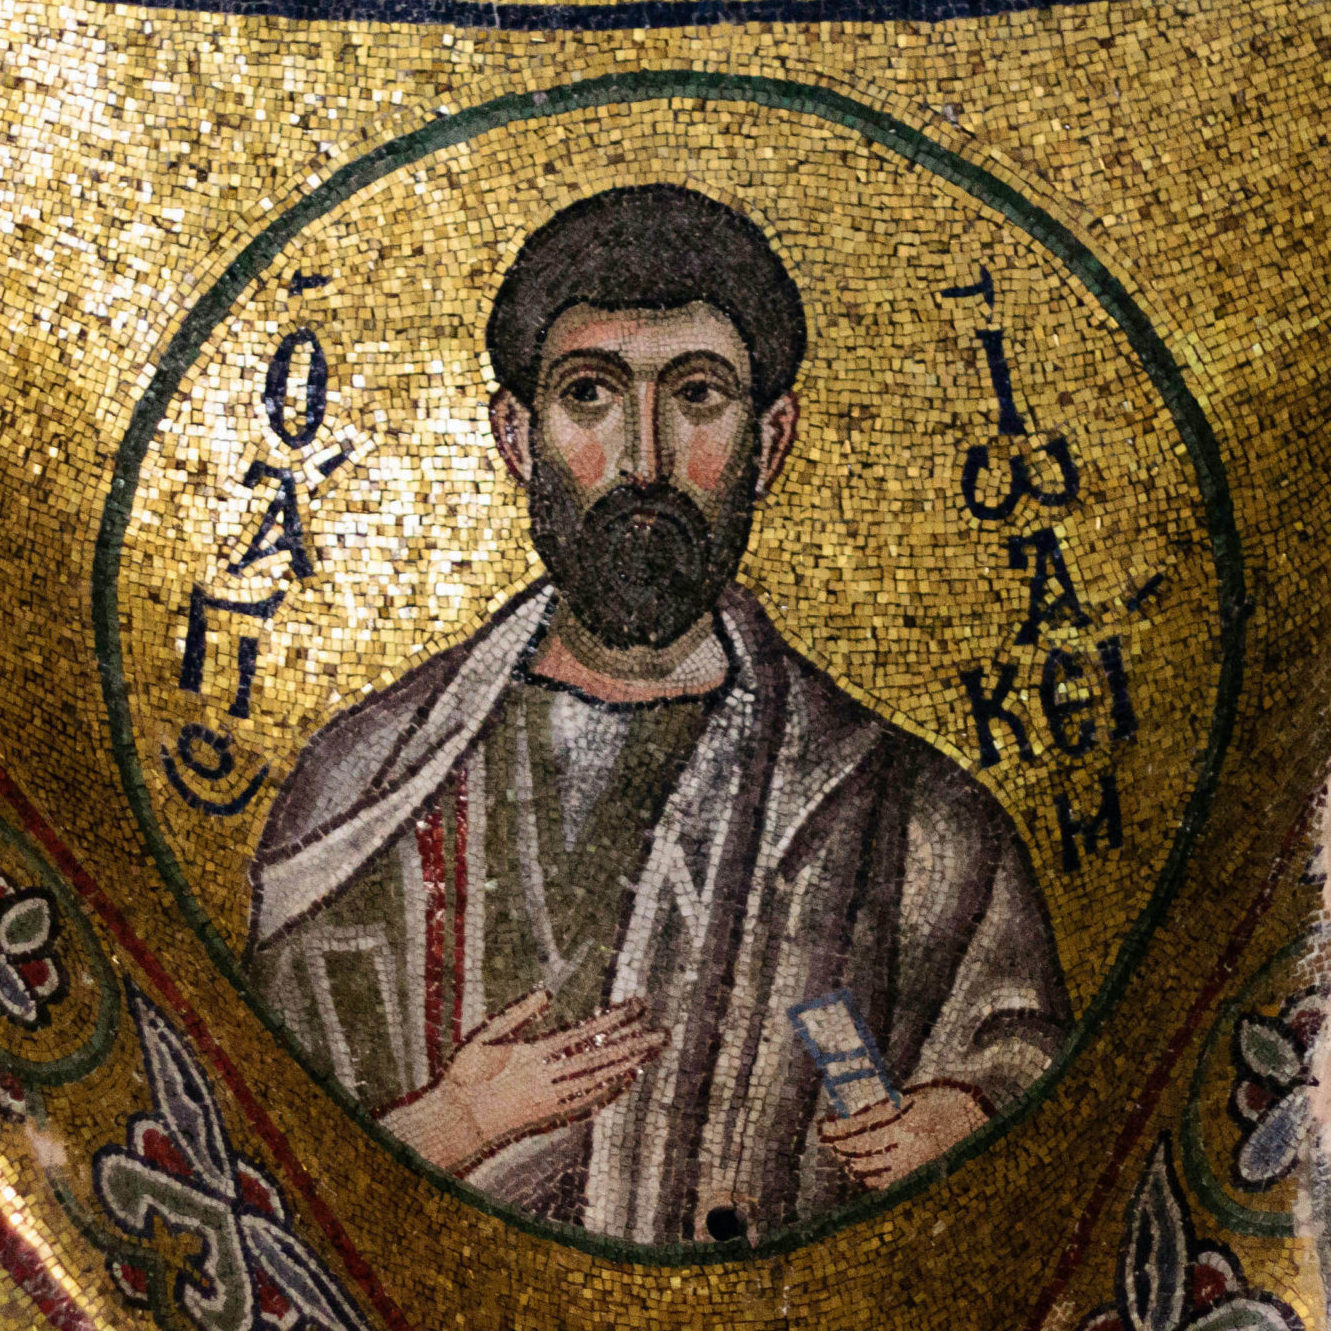 St. Joachim, 11th century, mosaic, narthex, katholikon, Nea Moni, Chios (photo: Marmontel, CC BY-SA 2.0)